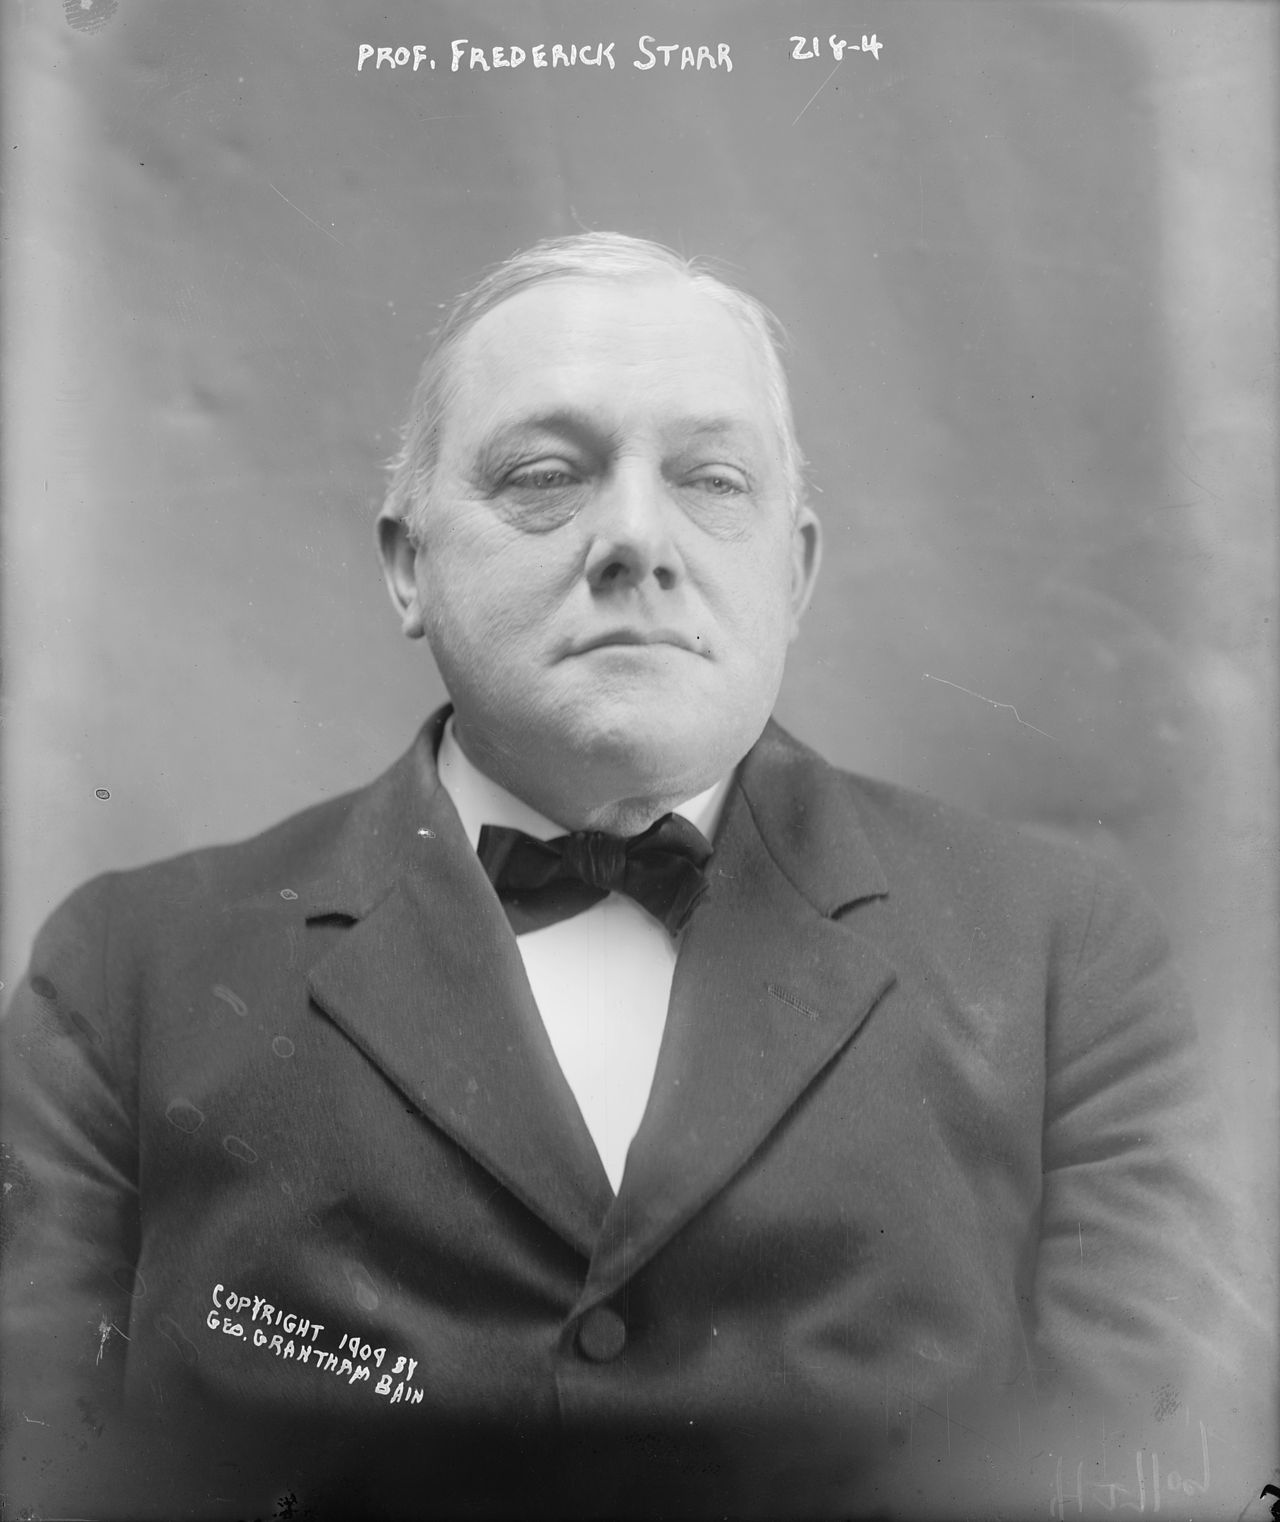 Photo of Fredrick Starr circa 1909 AD.